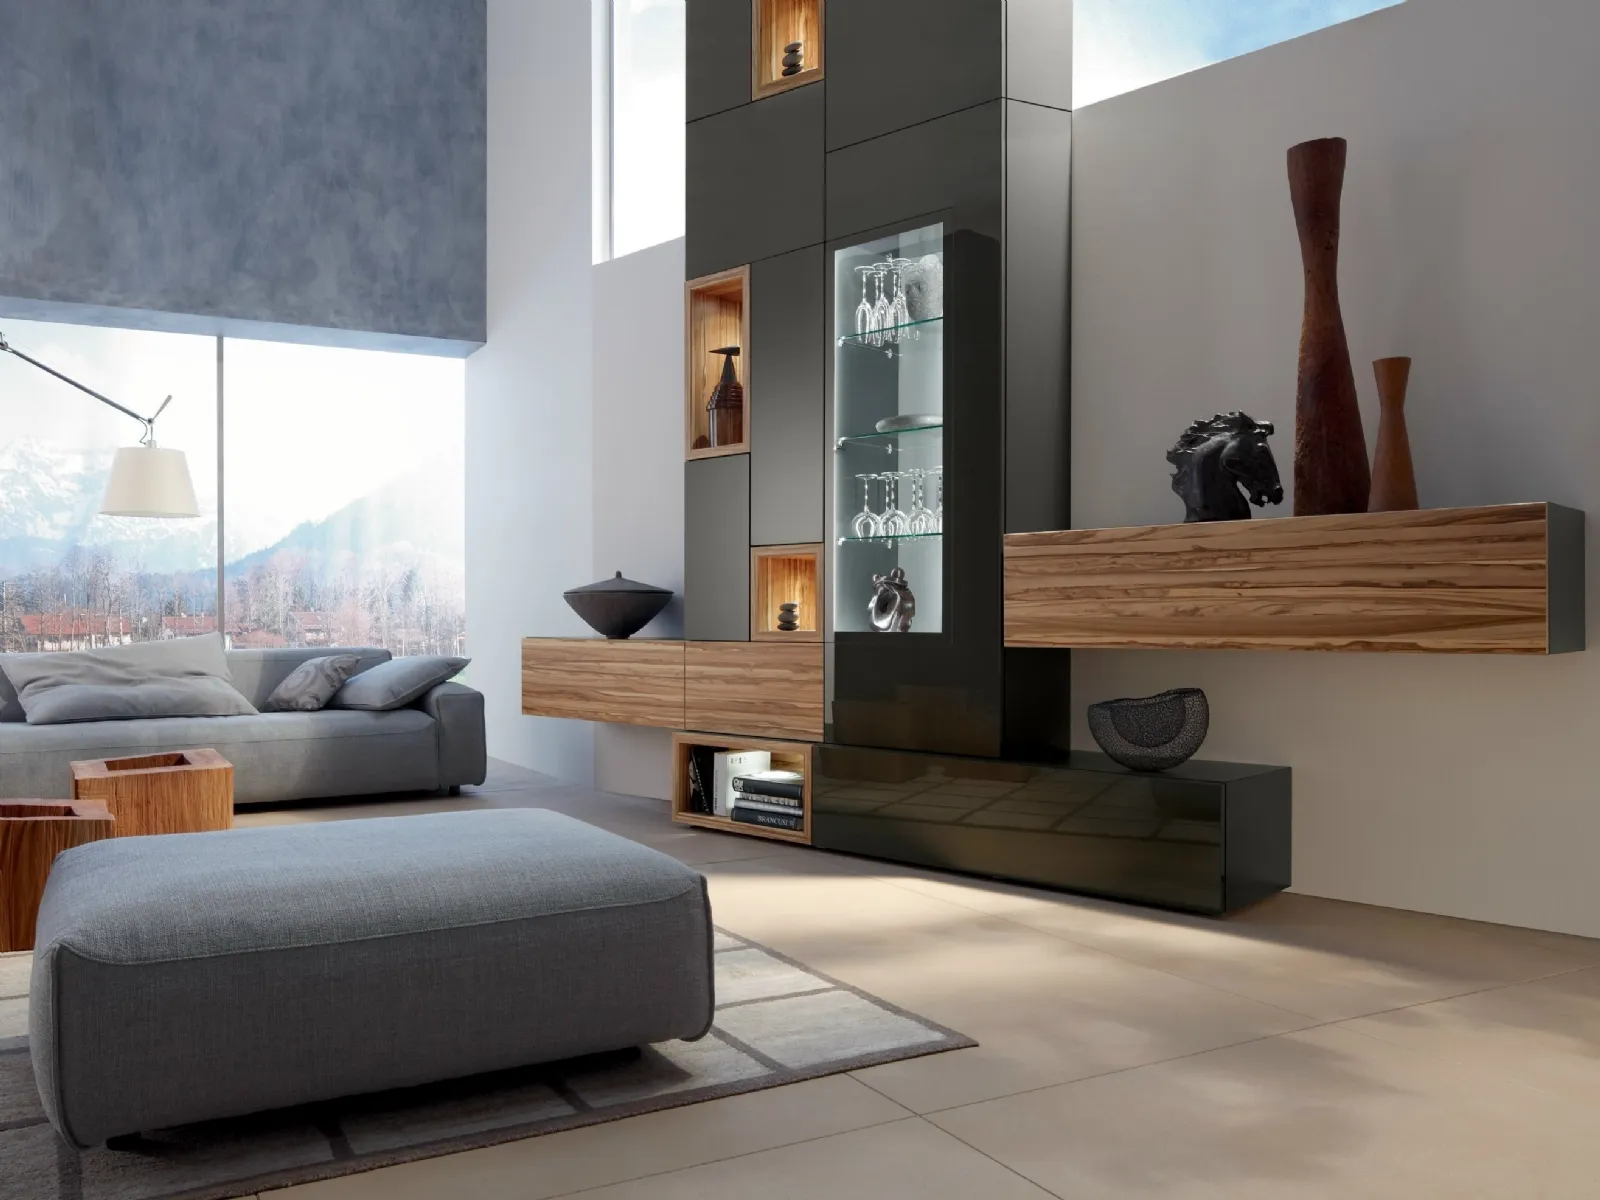 Soggiorni moderni idee e soluzioni mobili soggiorno for Arredamento soggiorno immagini